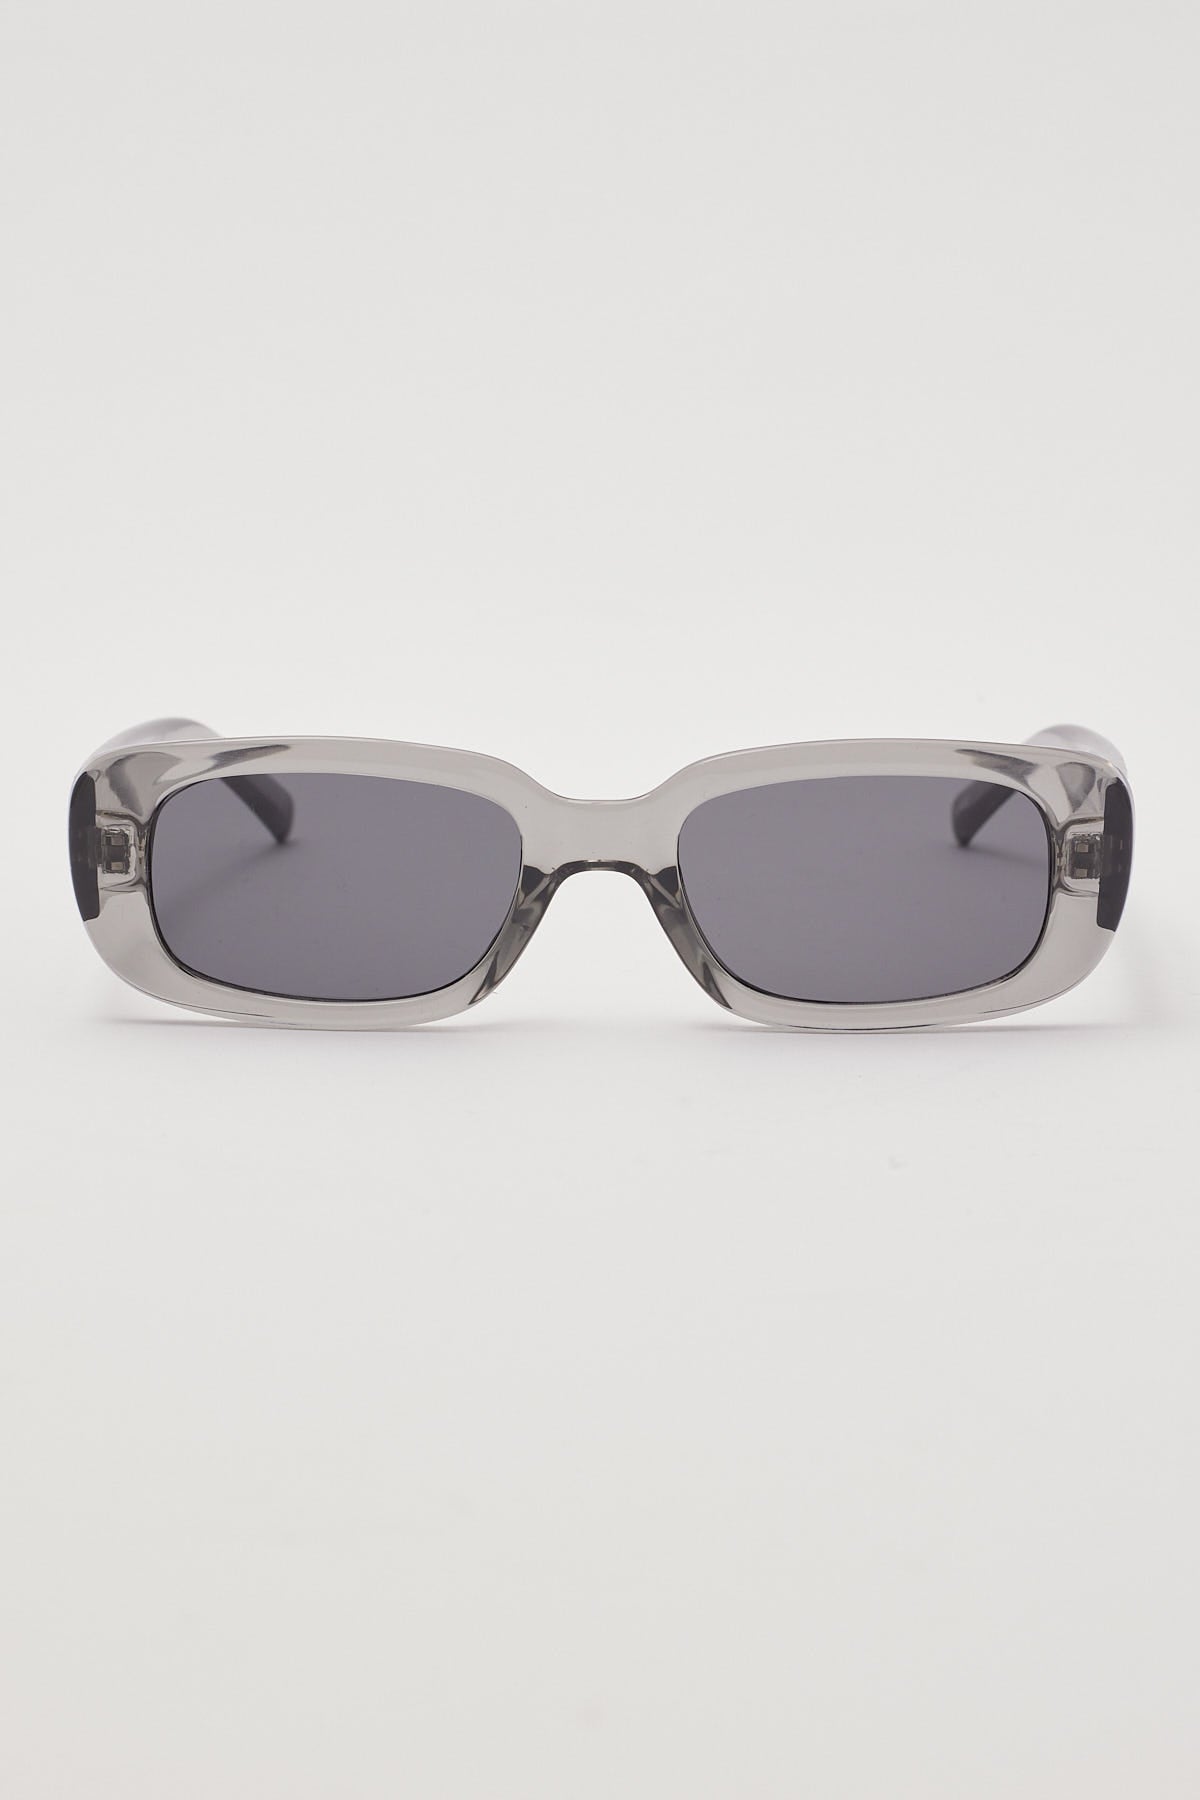 Reality Eyewear Xray Specs Dusk Grey